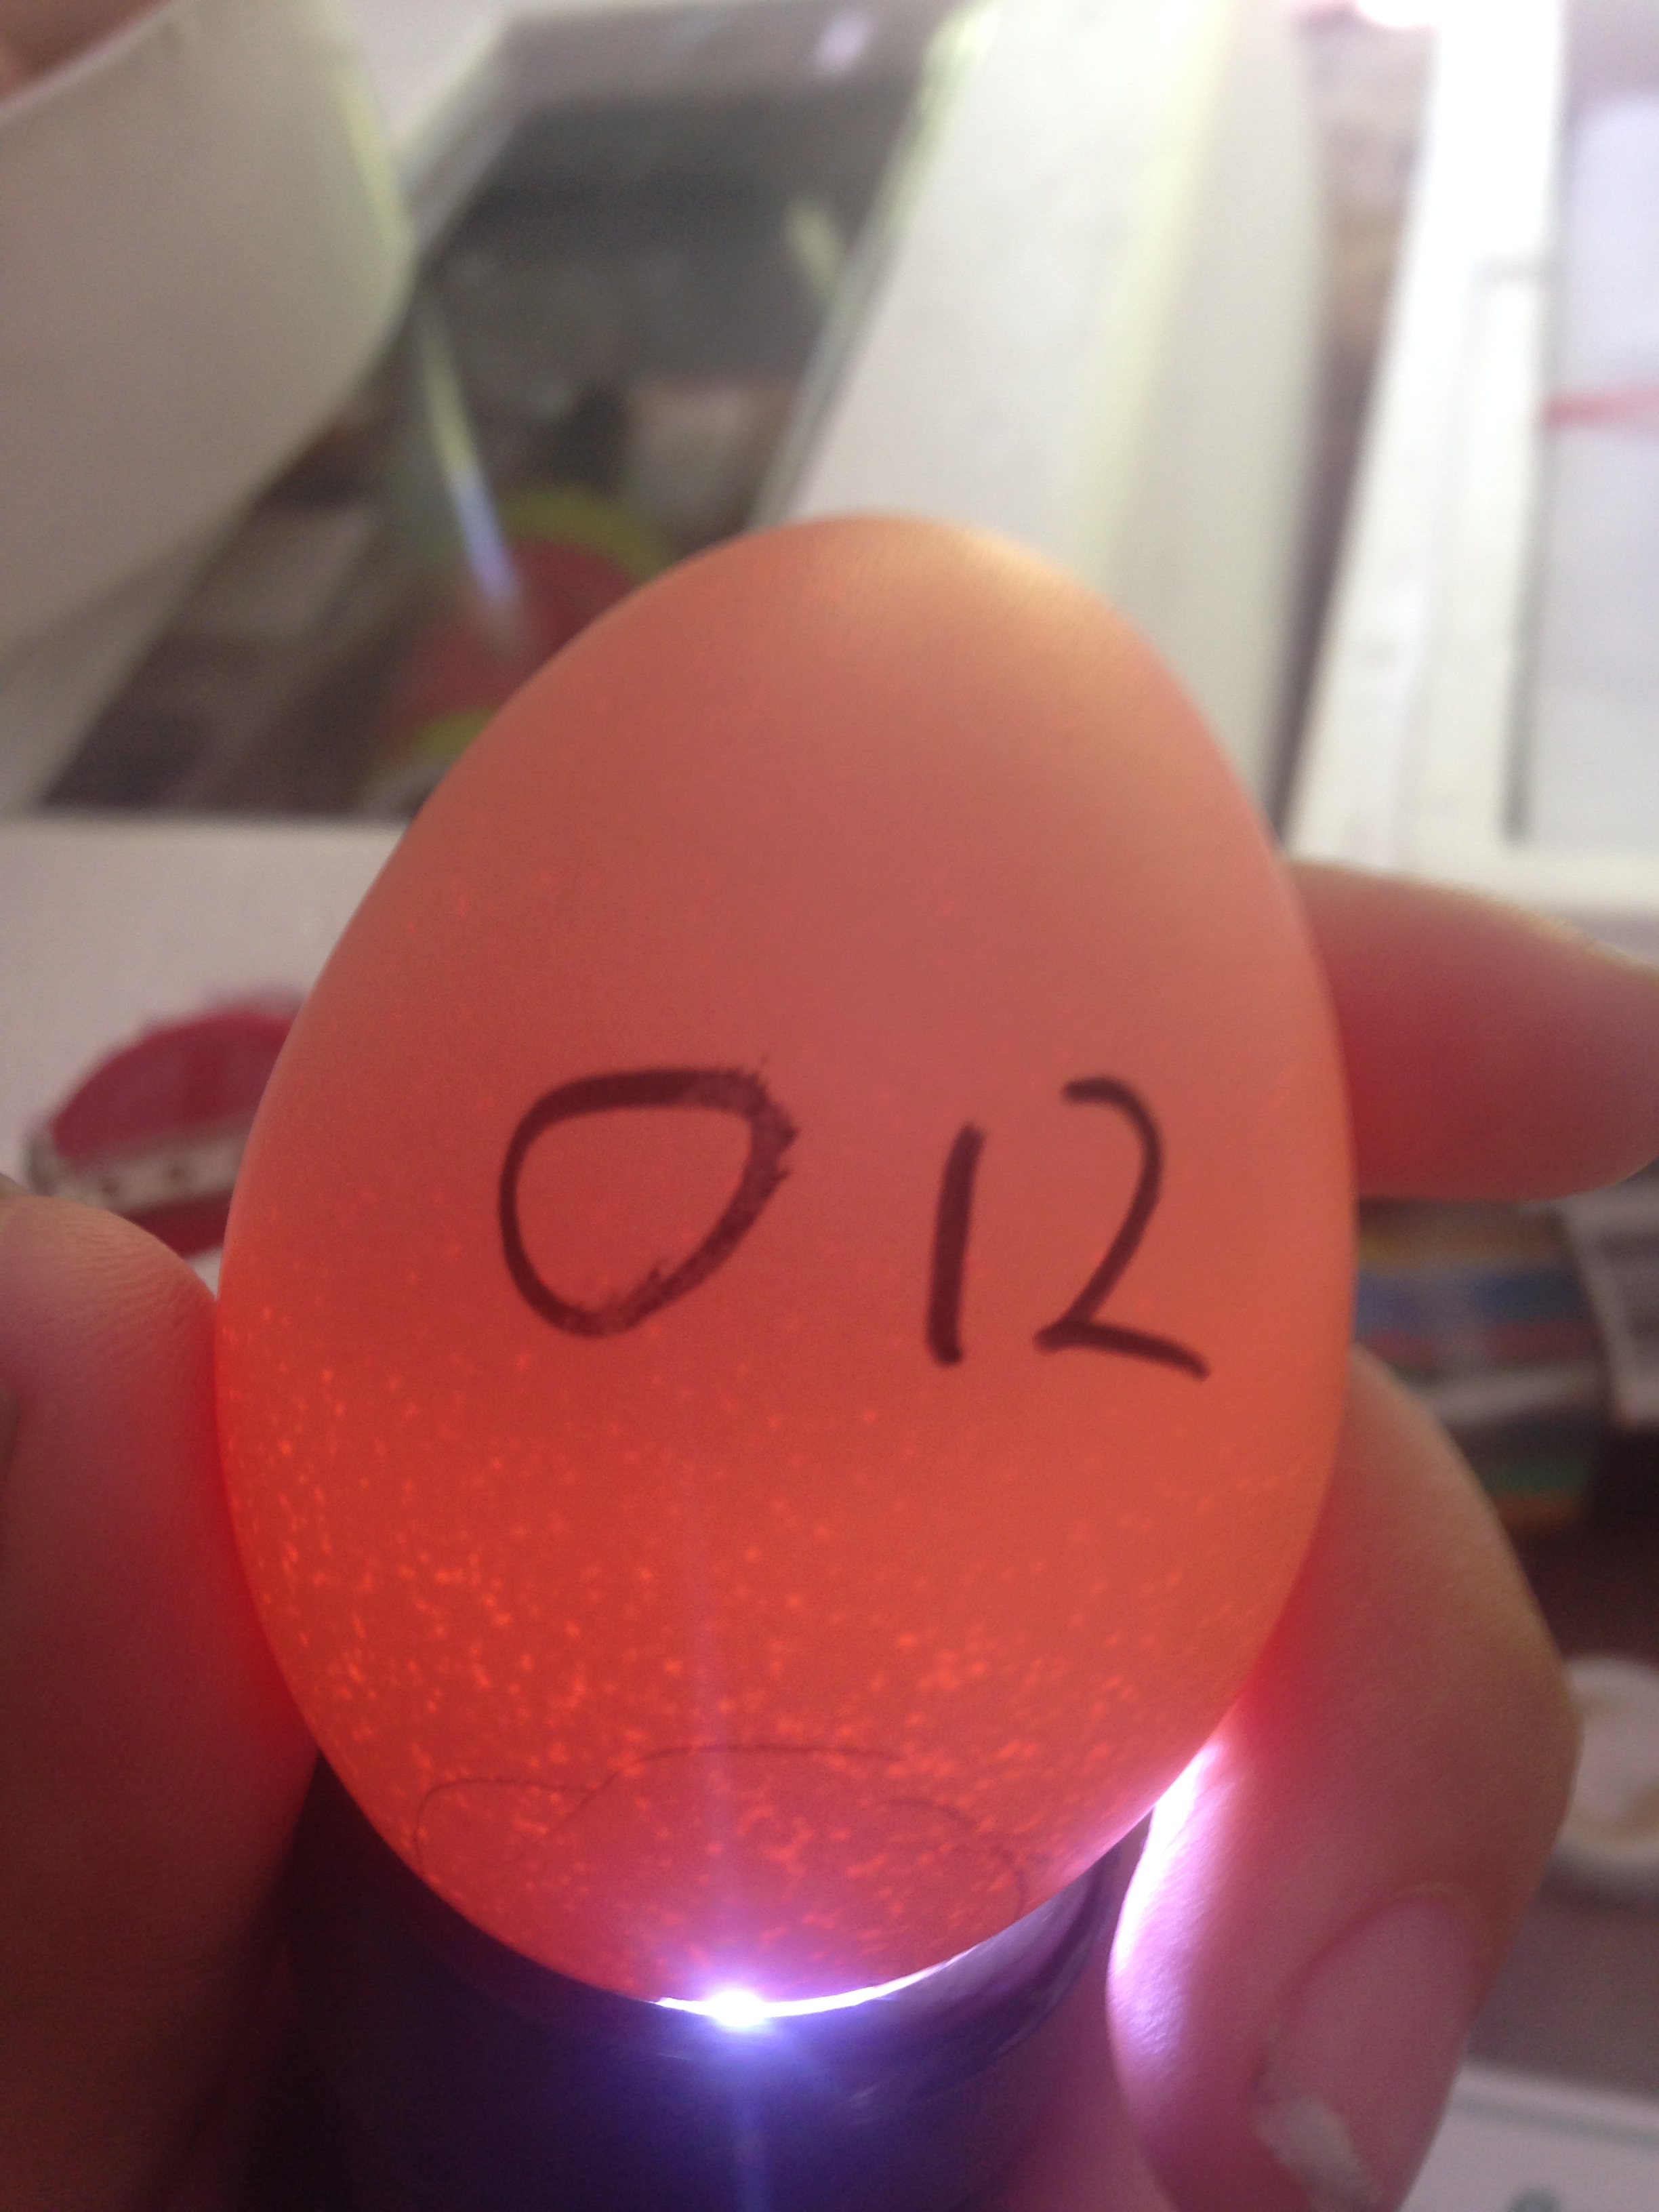 Egg 12 on day ~15